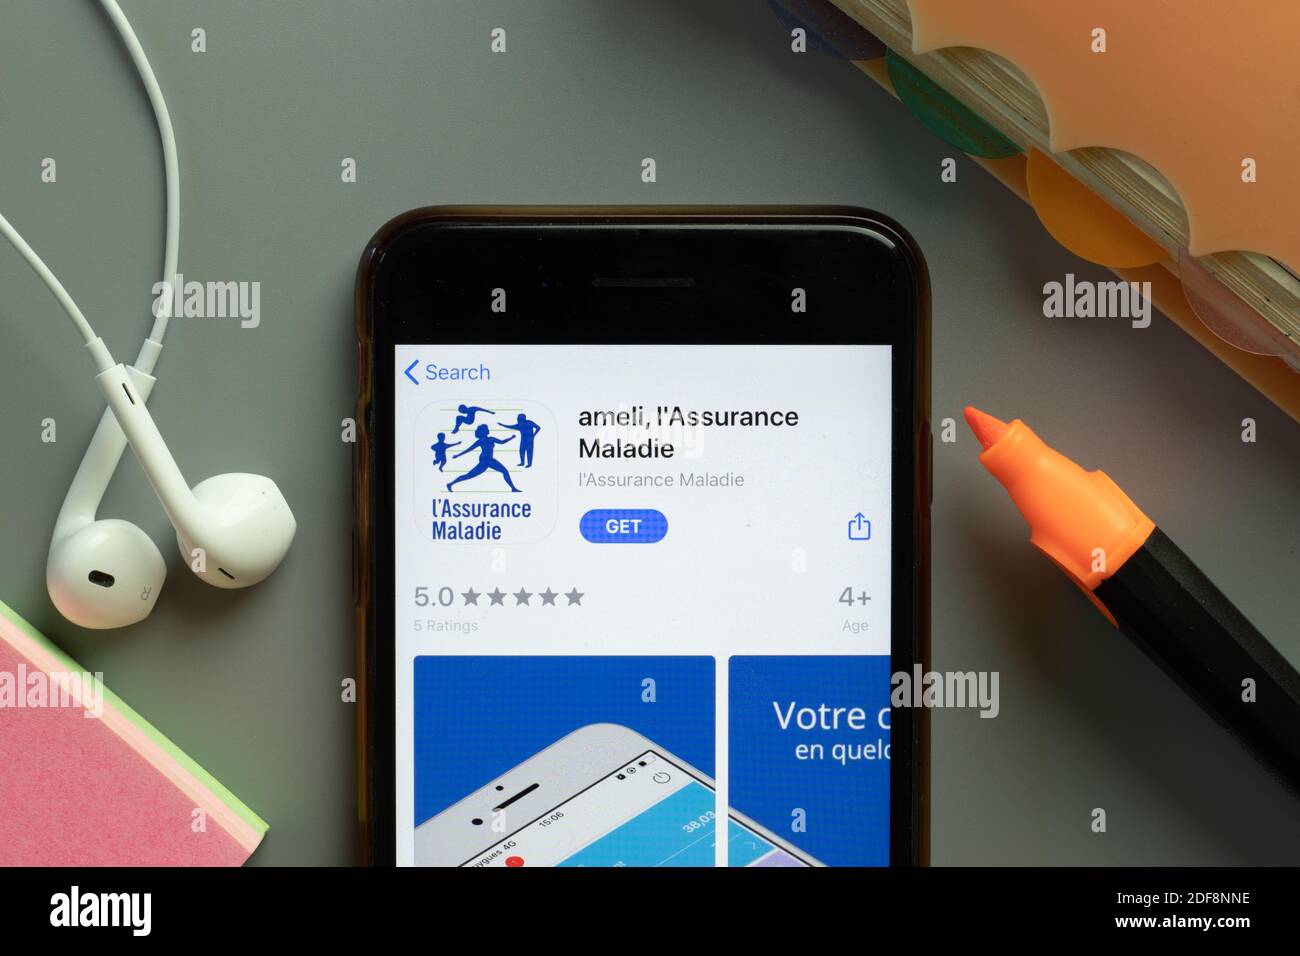 New York, USA - 1 dicembre 2020: icona dell'app mobile ameli Assurance Maladie sullo schermo del telefono, editoriale illustrativo. Foto Stock